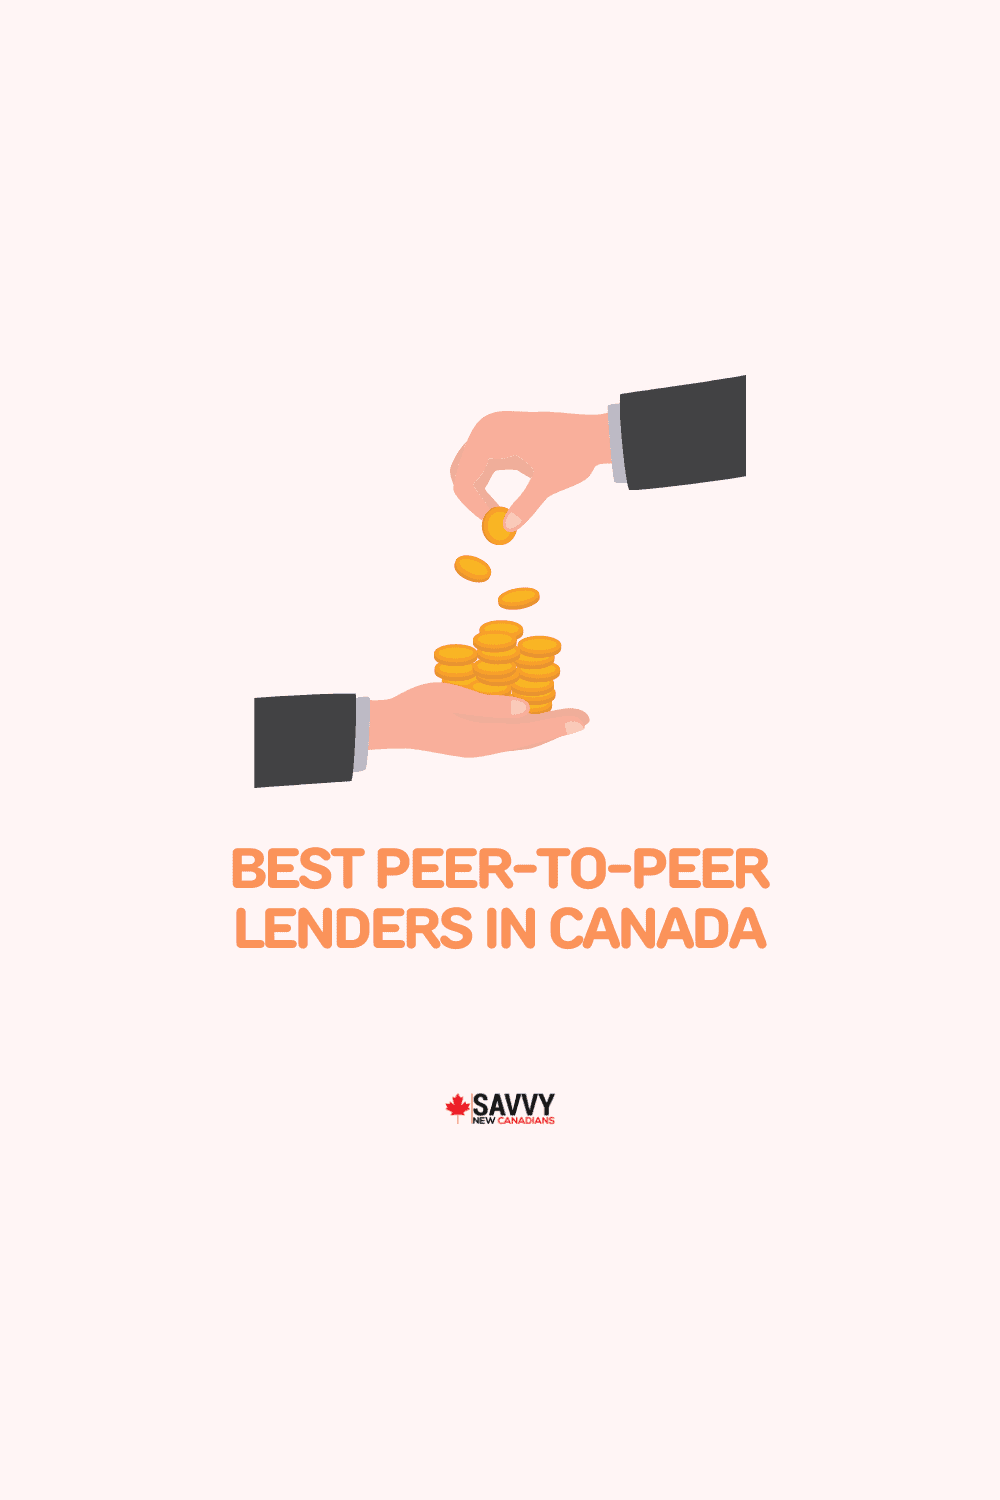 Best Peer-to-Peer Lenders in Canada for 2022